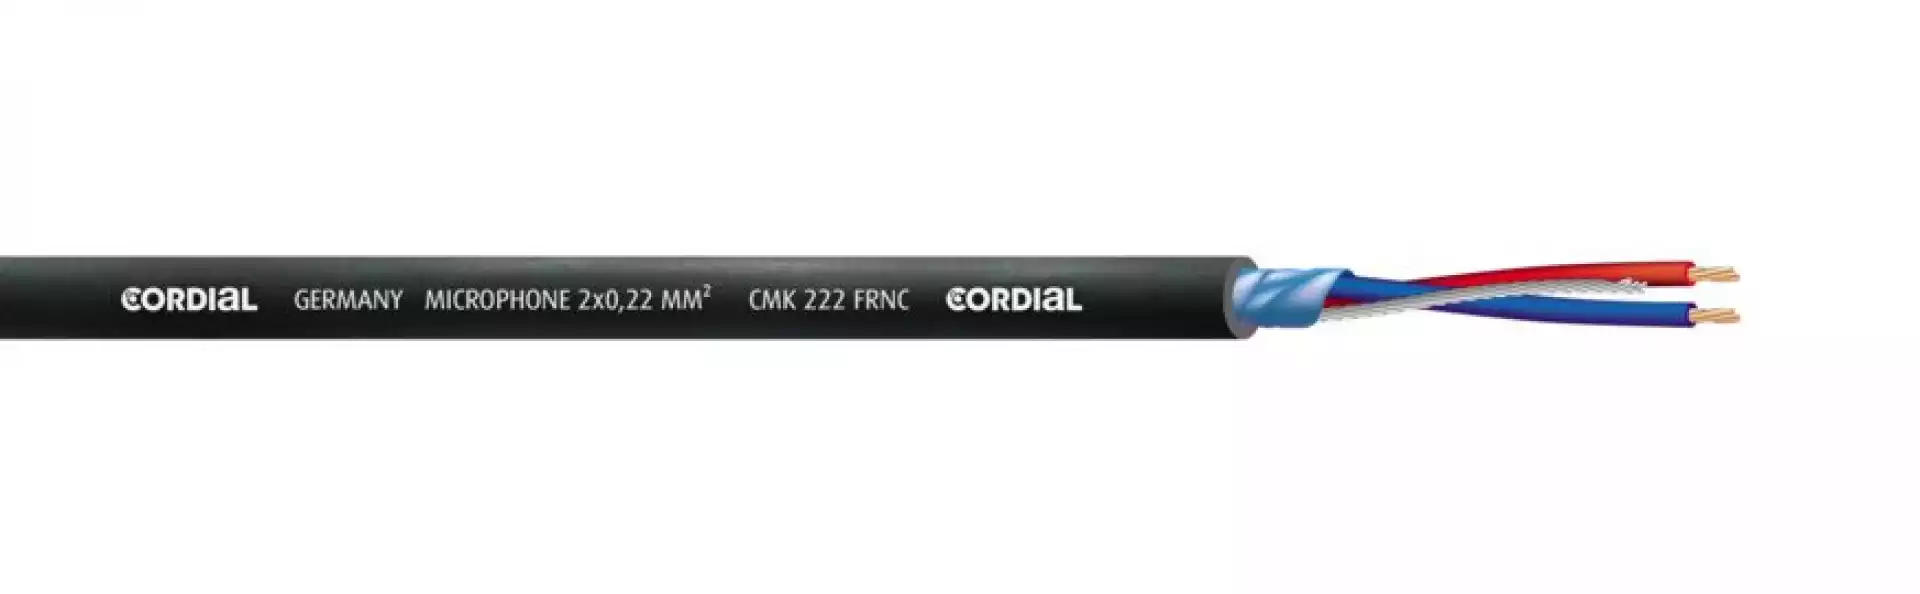 CORDIAL CMK 222 FRNC